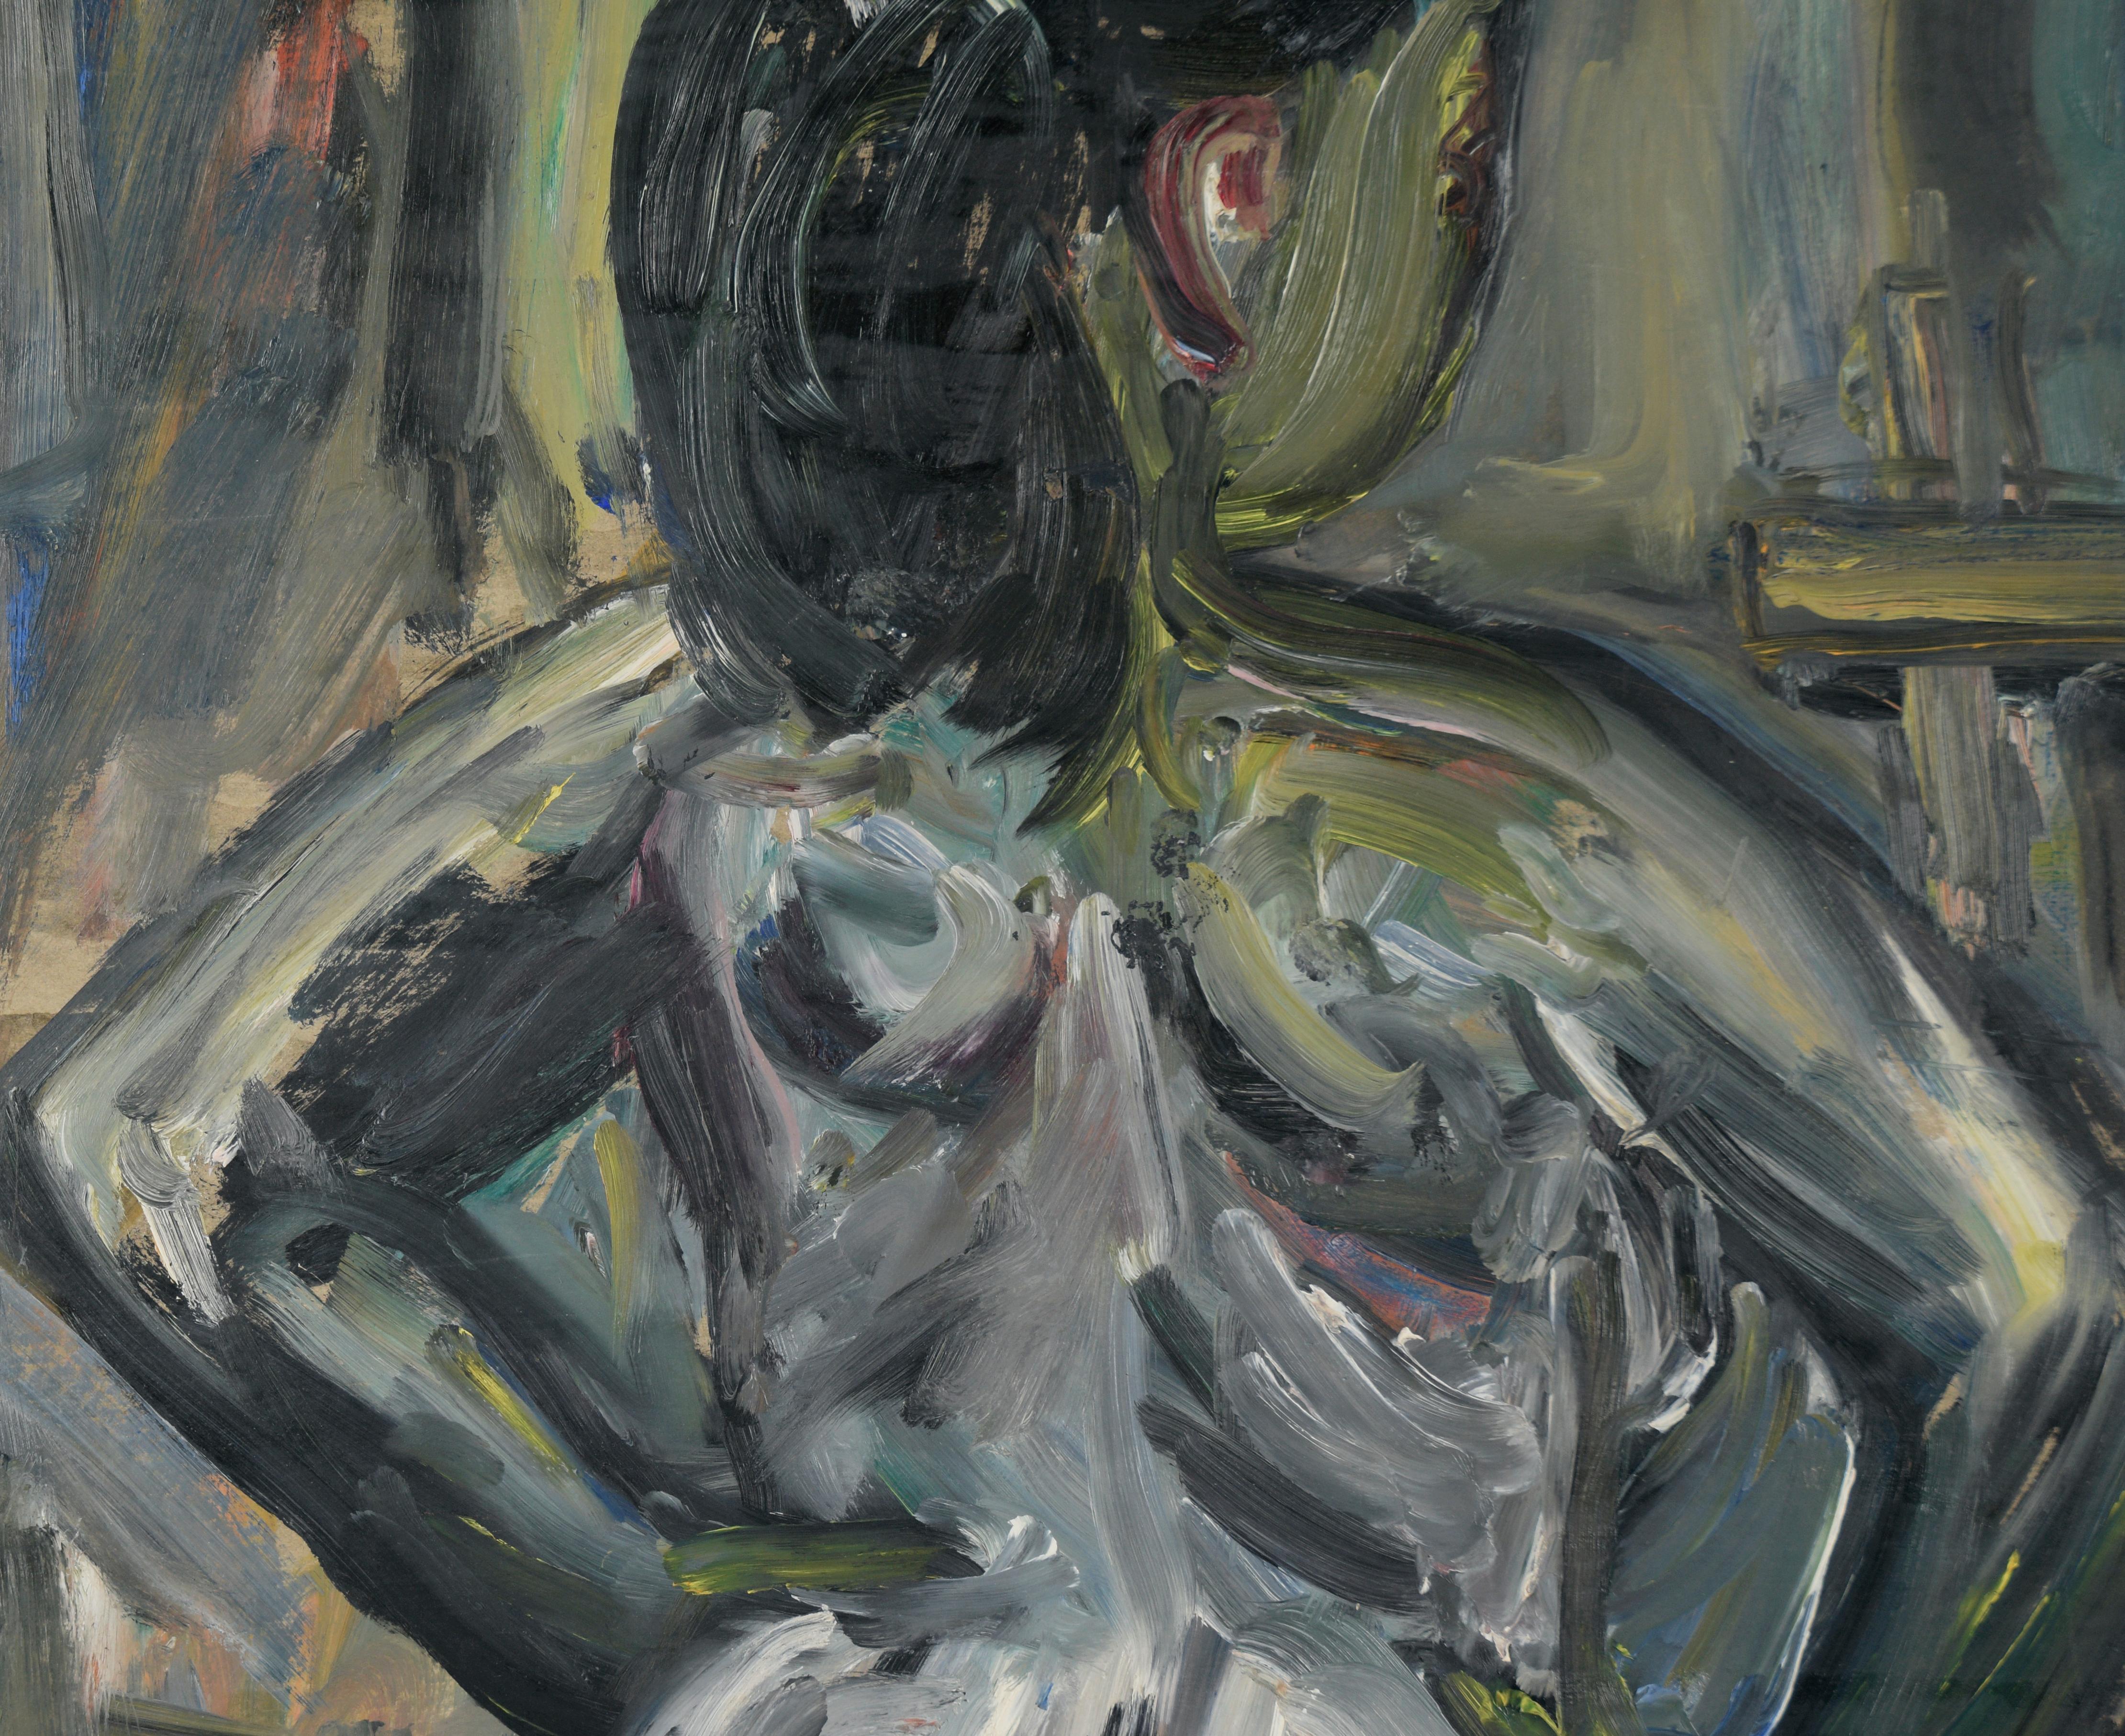 Abstrakt-expressionistischer Akt aus der Bay Area in Öl auf Karton (Abstrakter Expressionismus), Painting, von Honora Berg